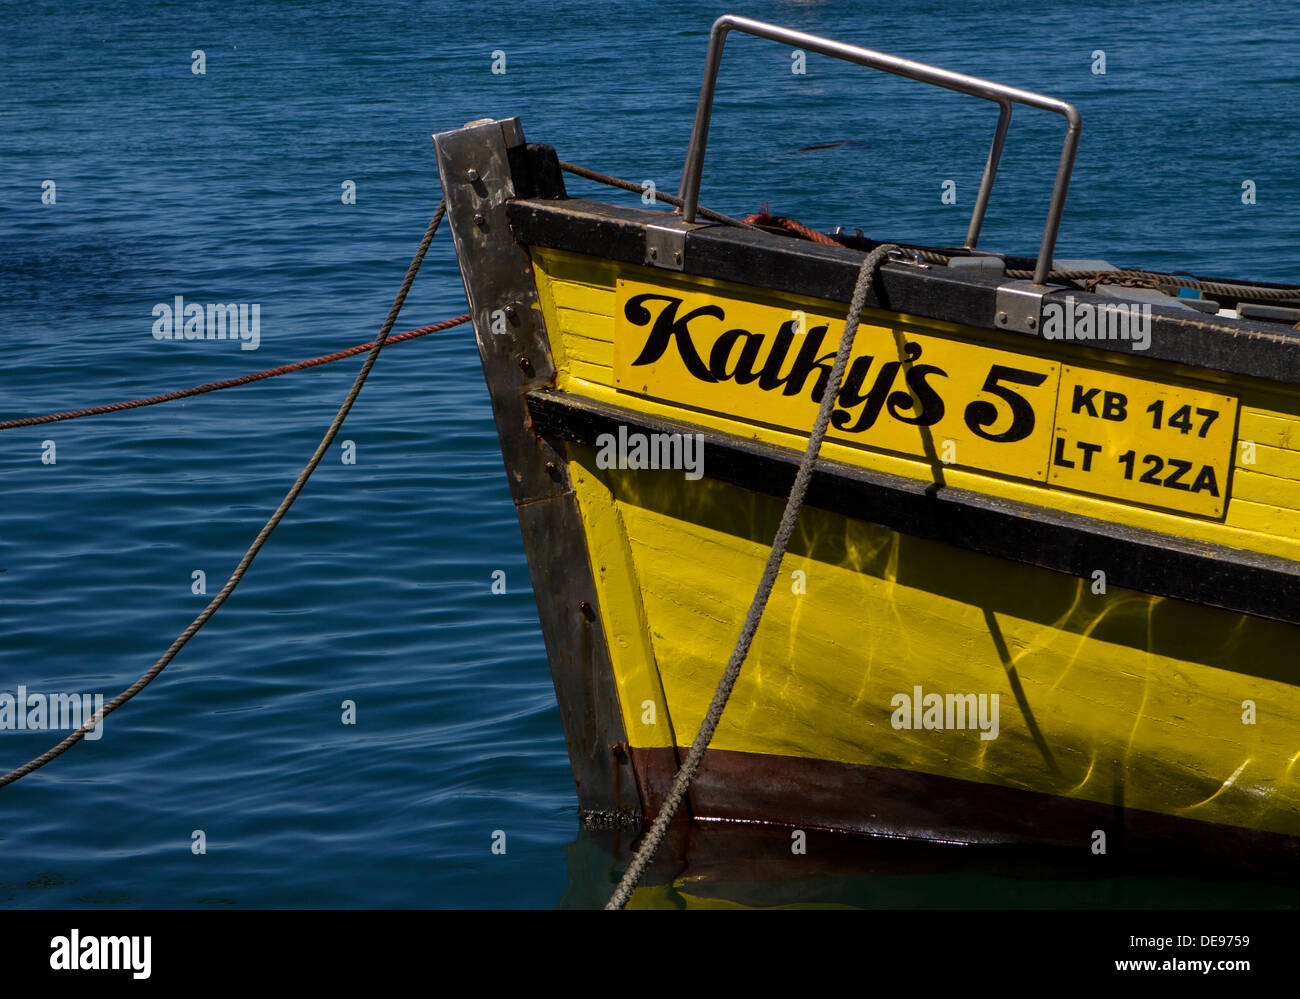 Fishing vessel in Kalk Bay Harbour. Stock Photo